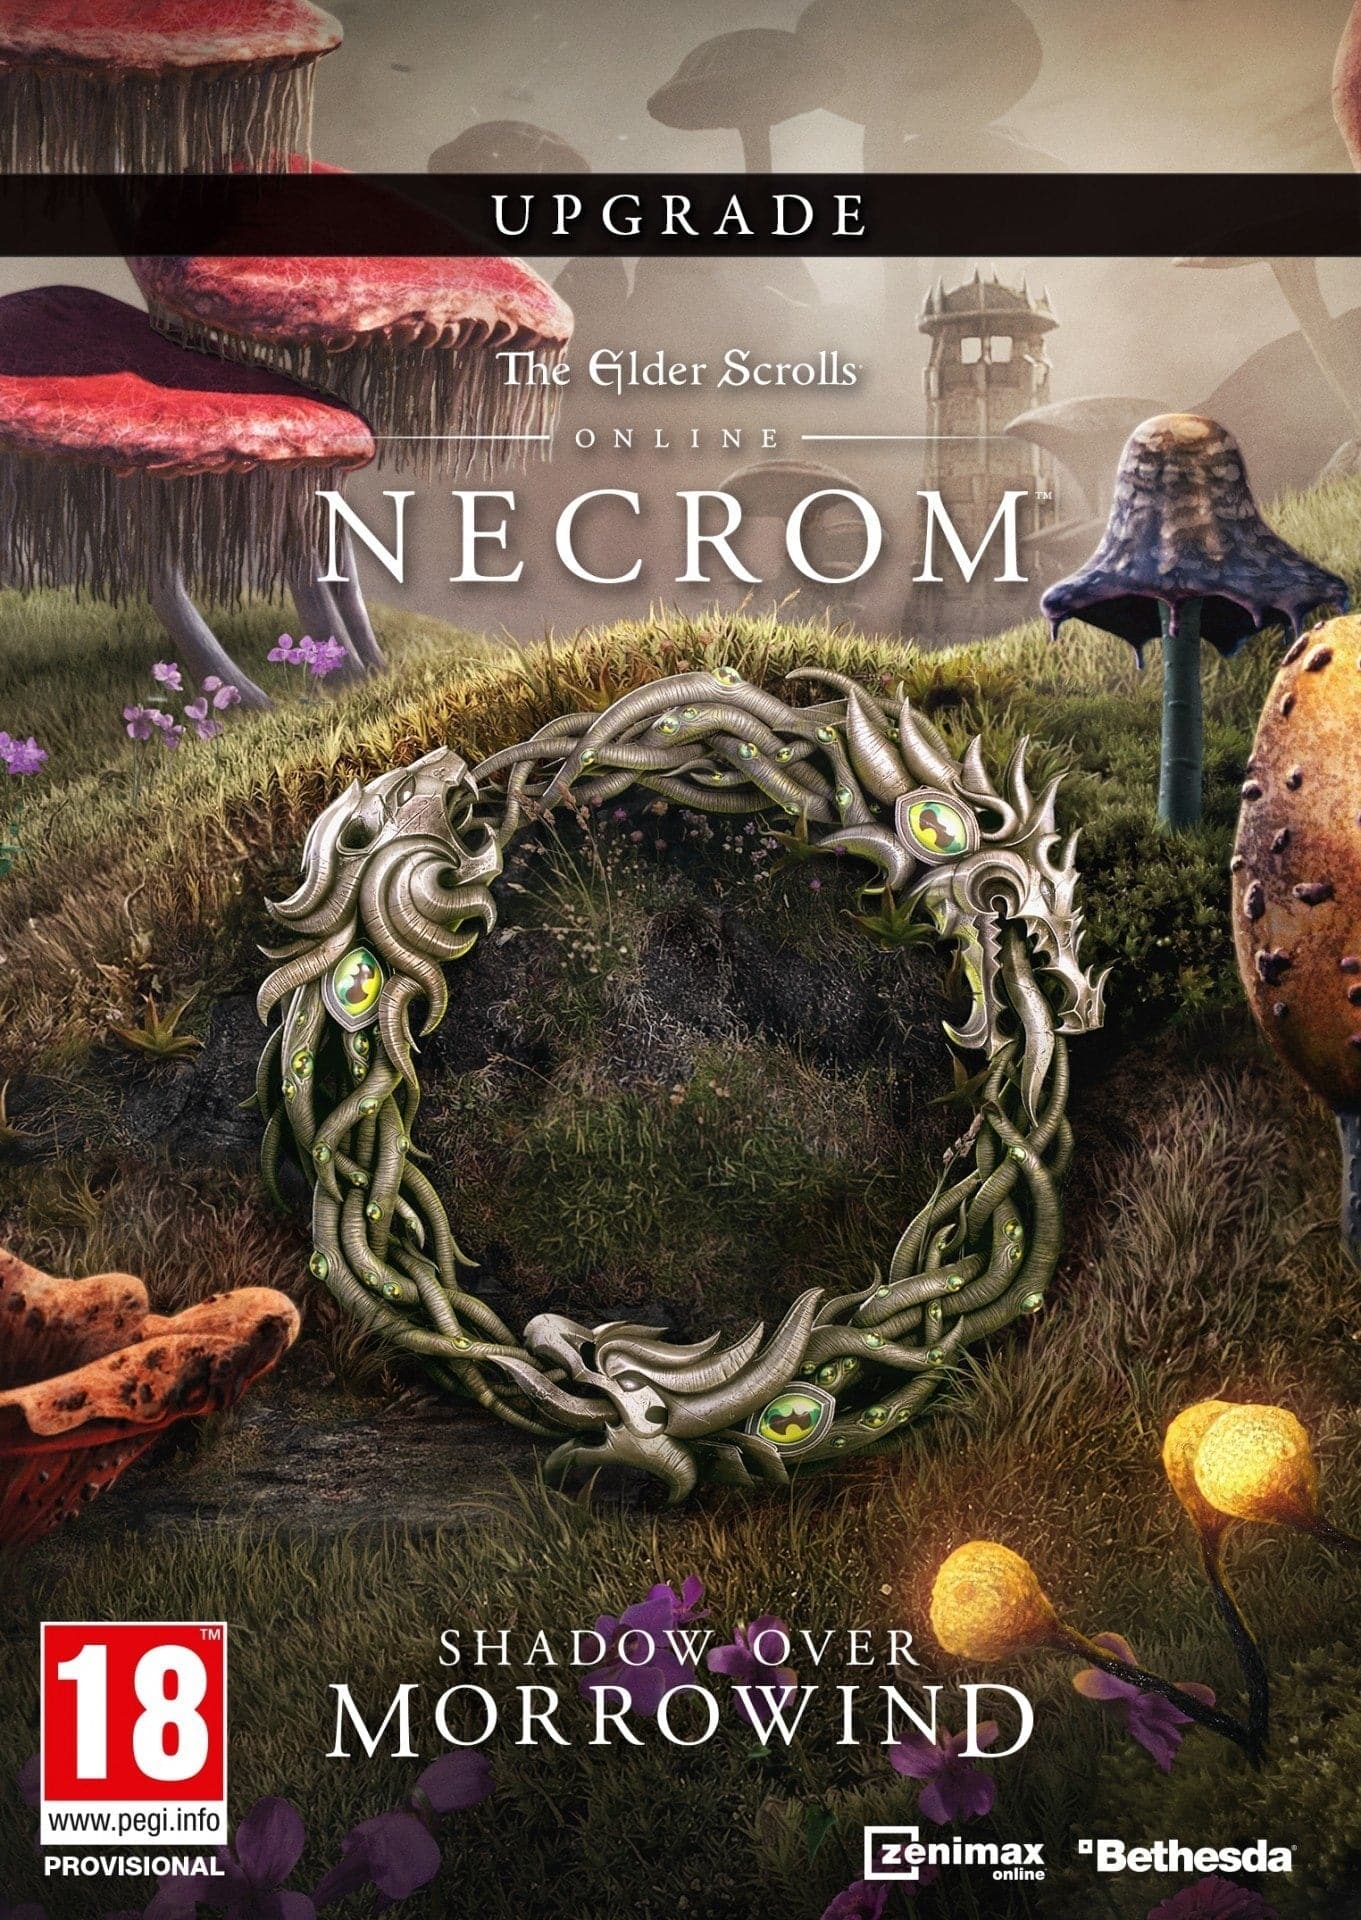 The Elder Scrolls Online: Upgrade: Necrom - Xbox